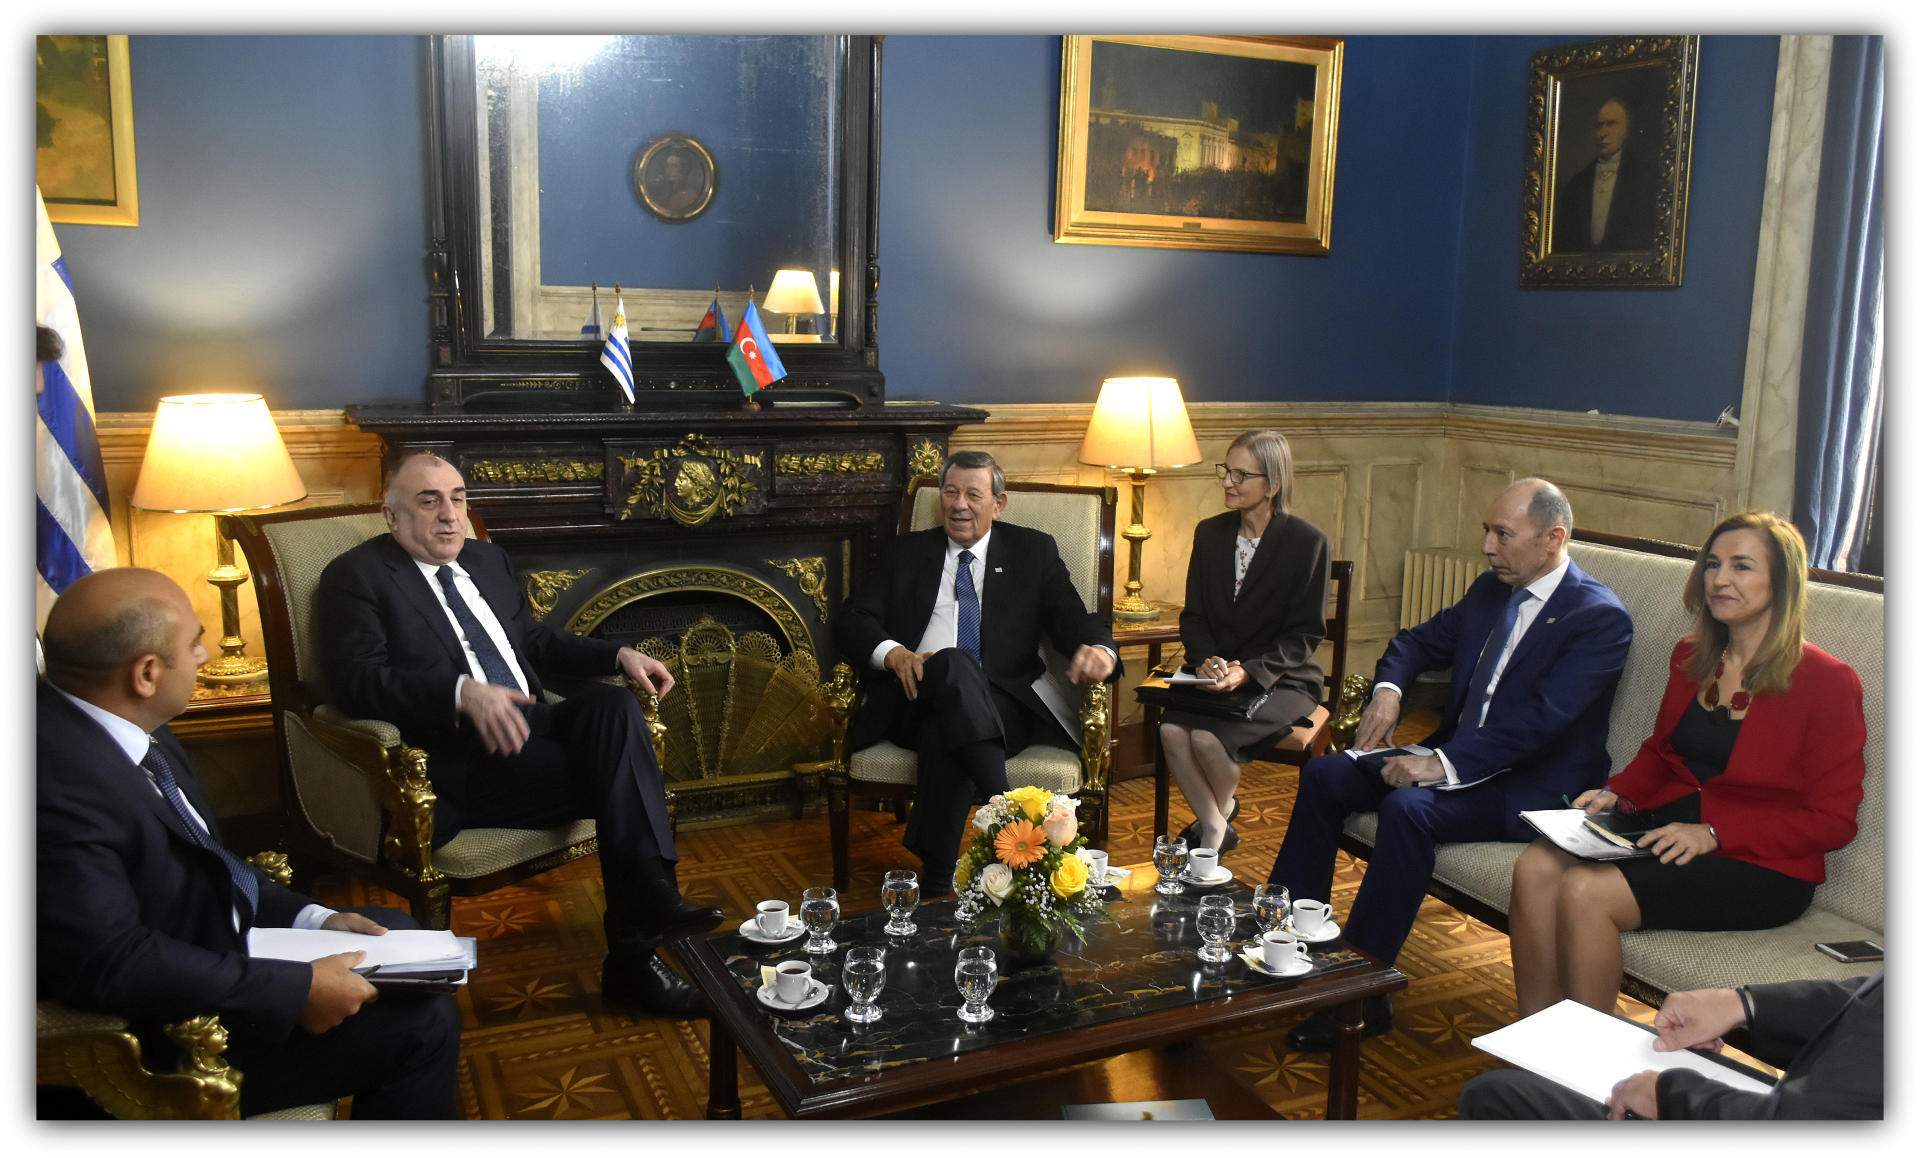 Уругвай намерен в дальнейшем еще больше углублять отношения с Азербайджаном (ФОТО)